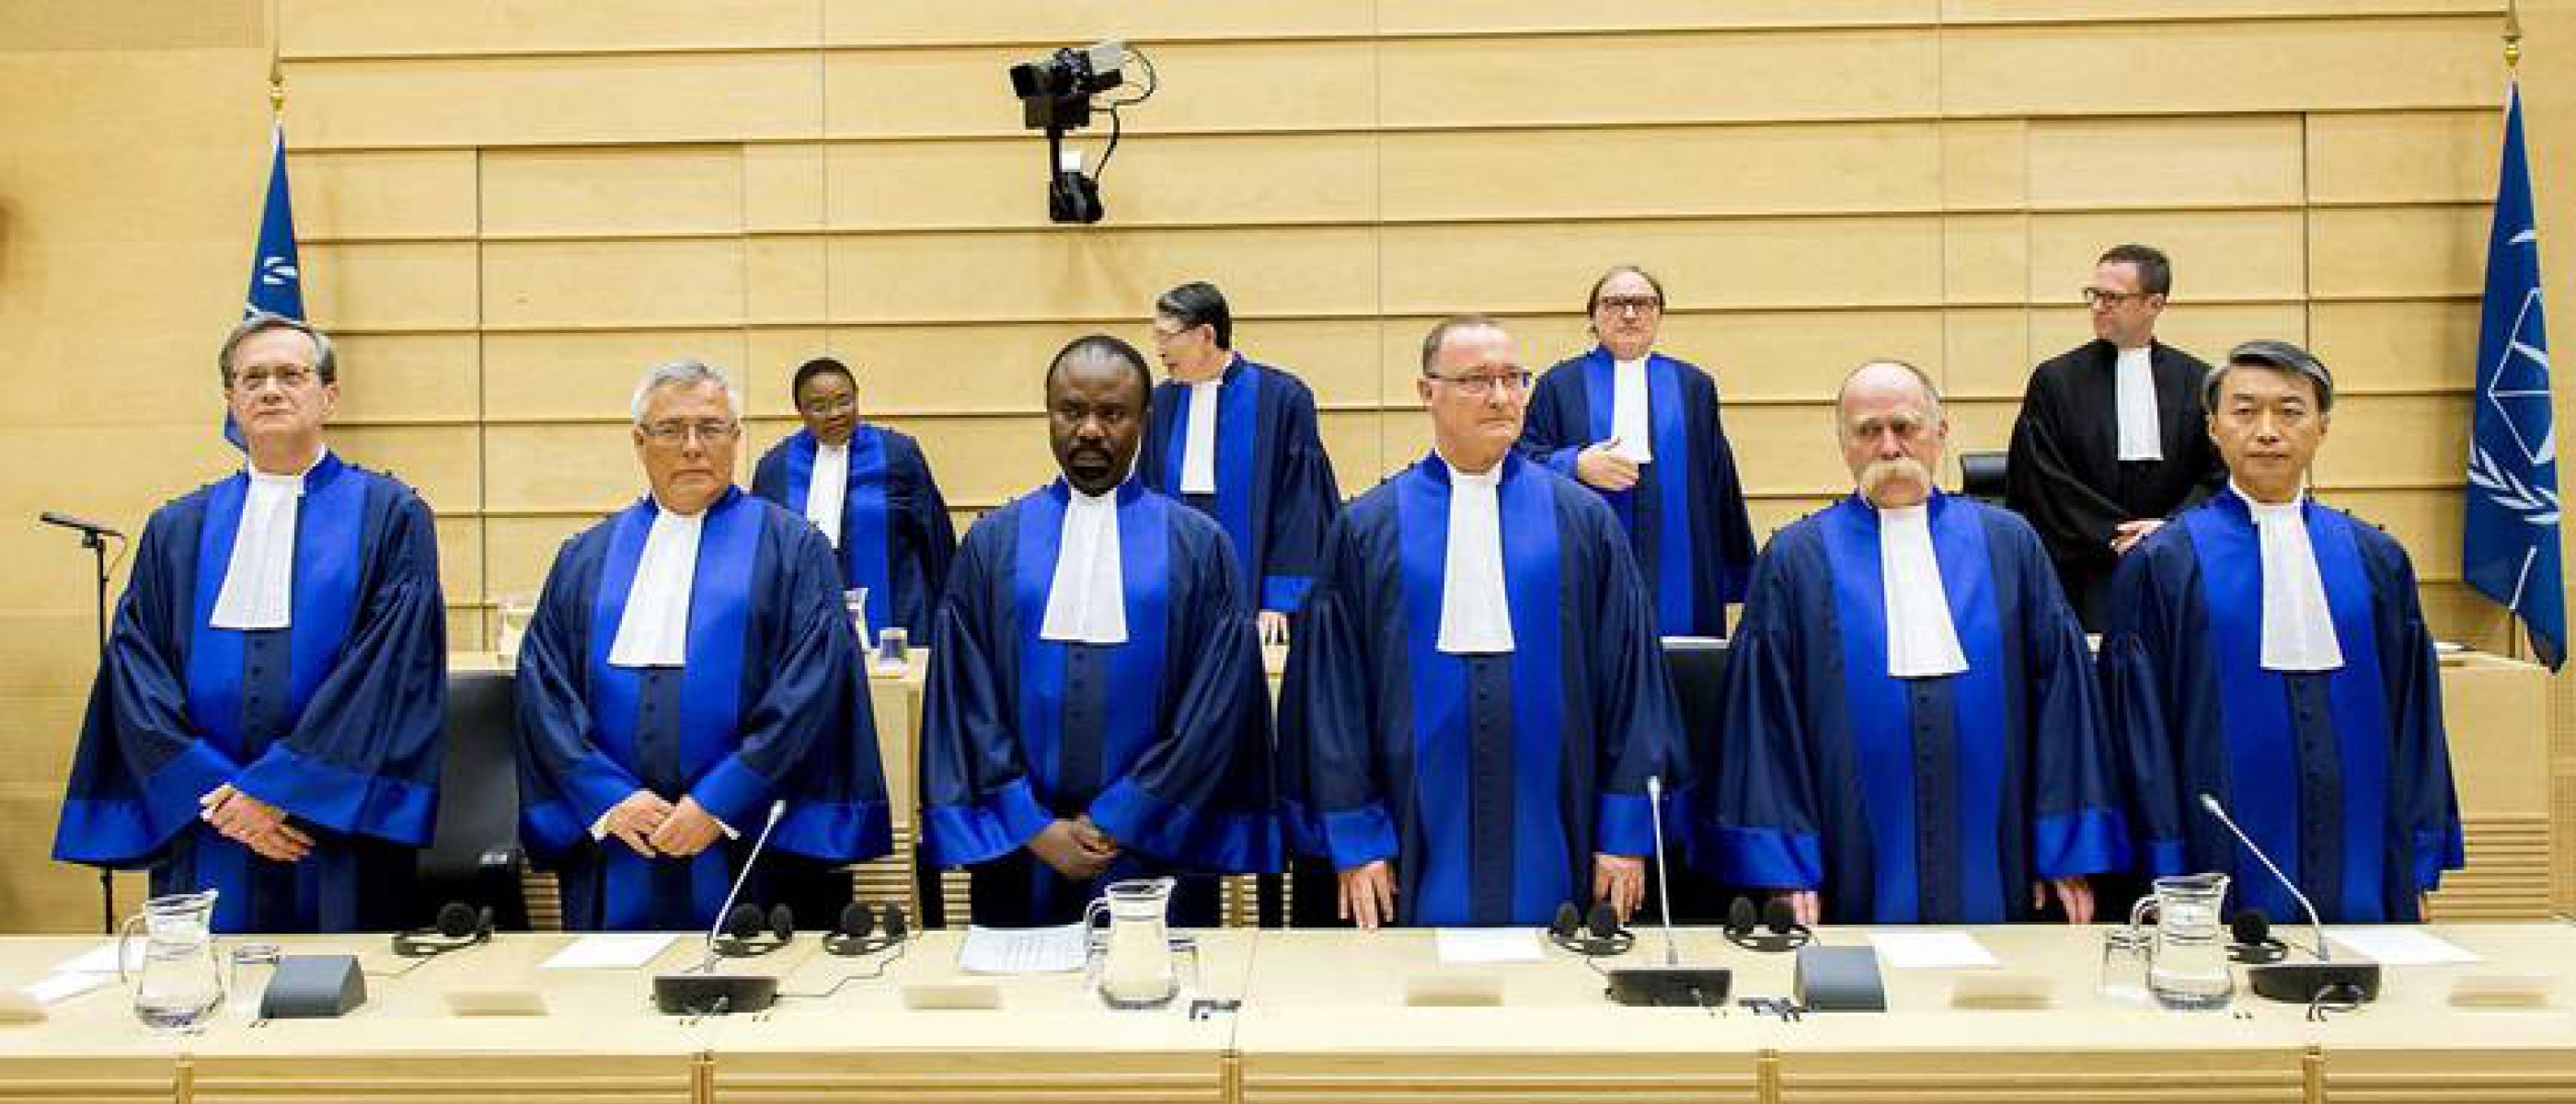 Суд международного трибунала. Международный трибунал в Гааге. Международный суд ООН. Римский статут международного уголовного суда. Прокурор Гаагского трибунала Африка.